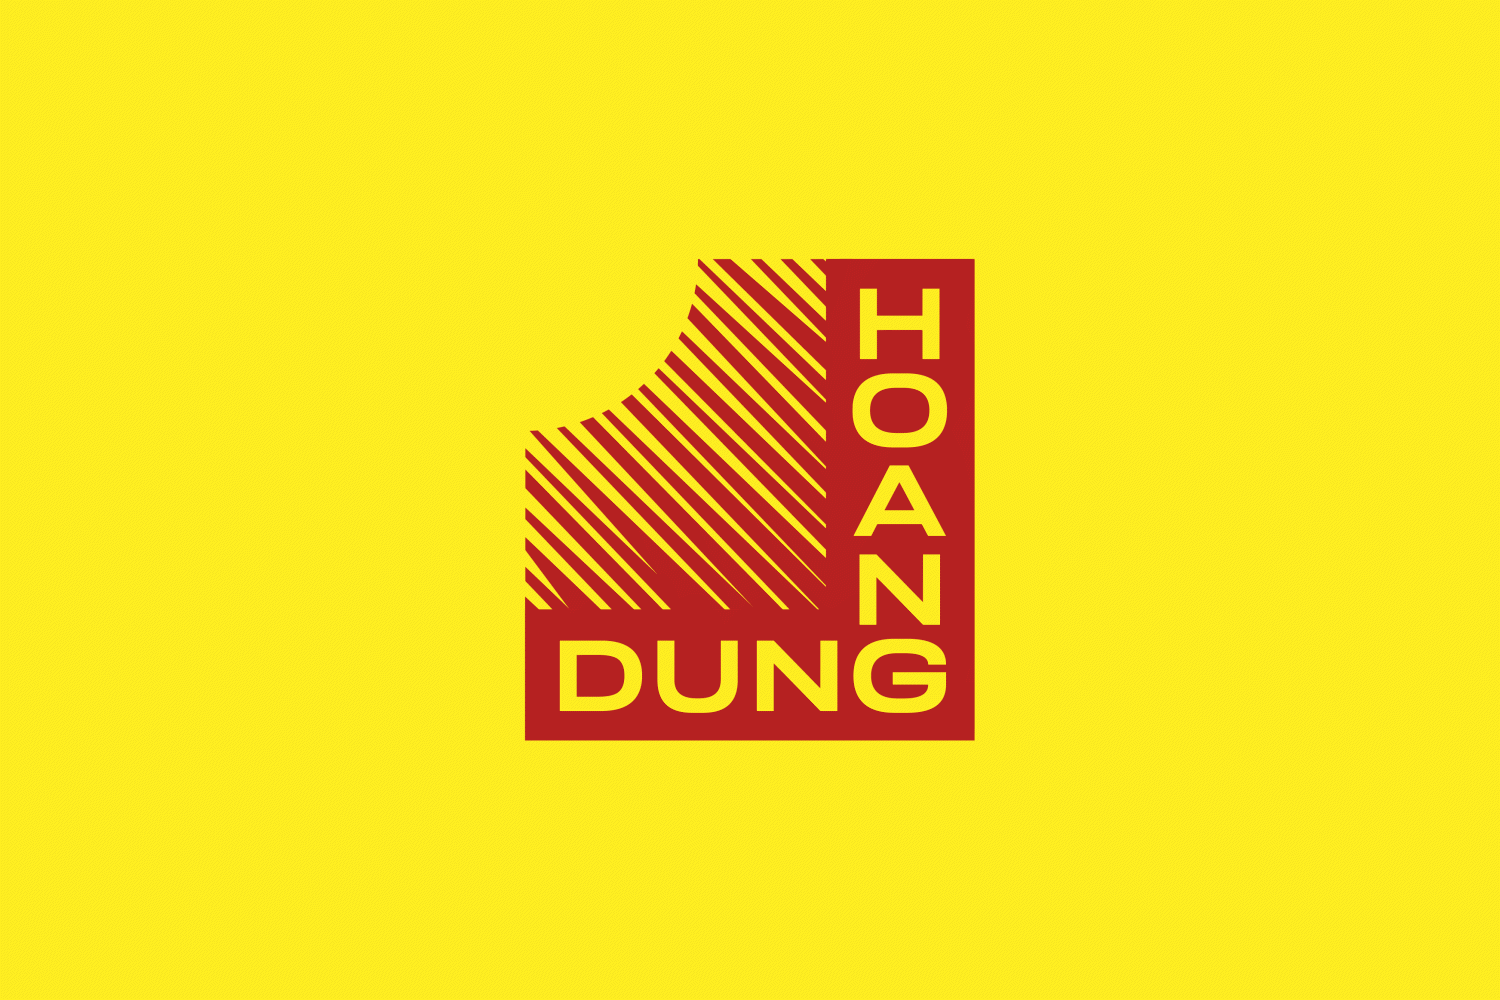 Hoang Dung logo animation